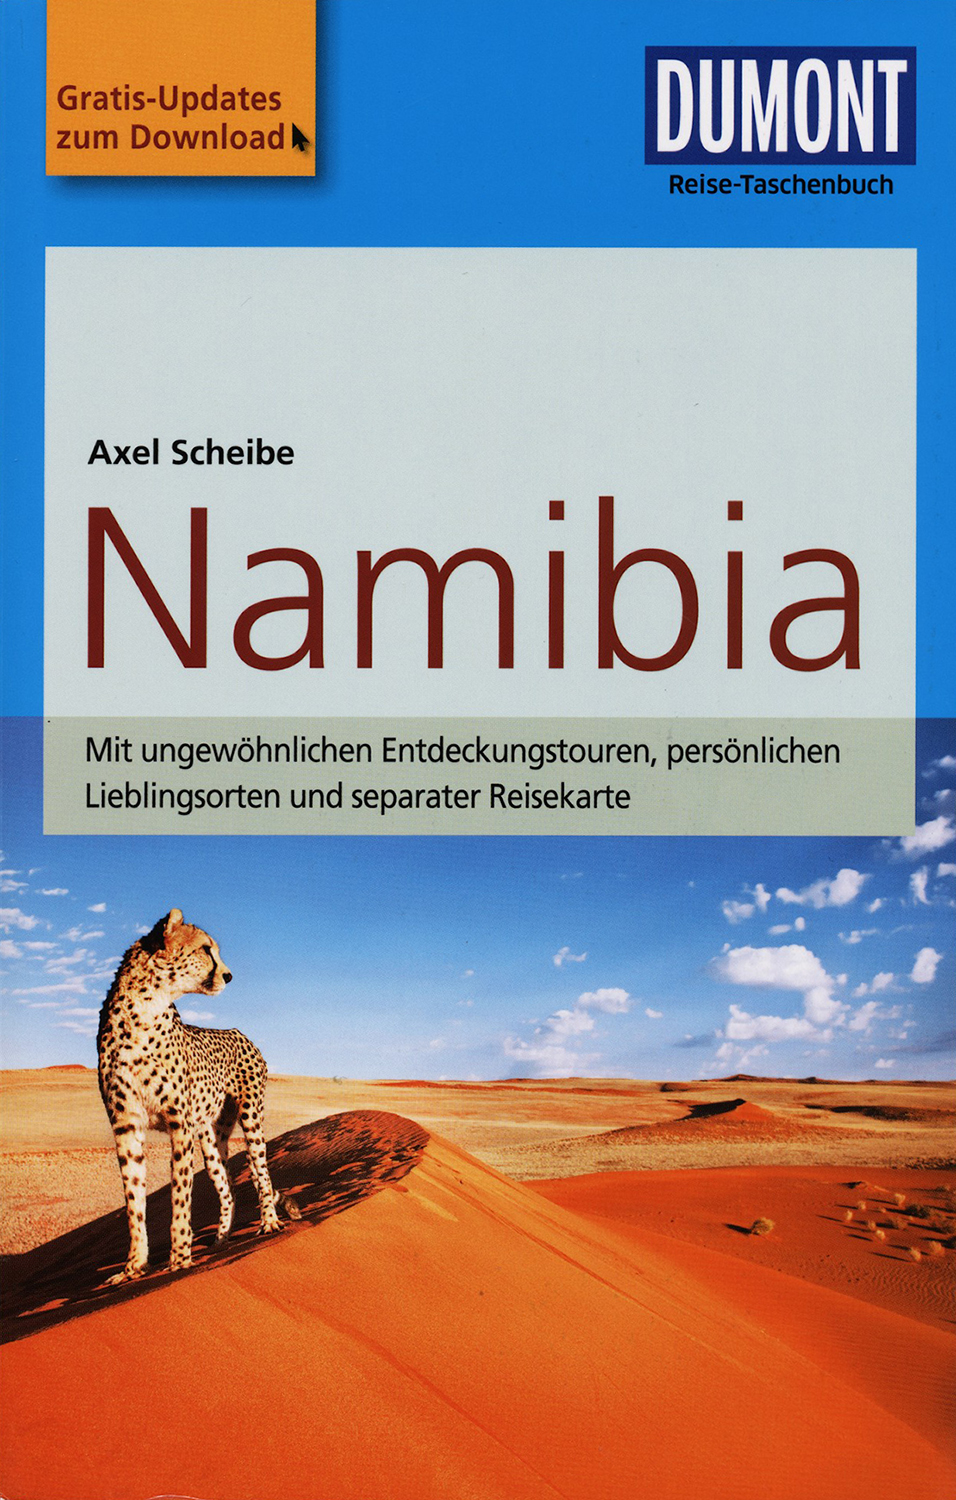 Namibia. DuMont Reise-Taschenbuch